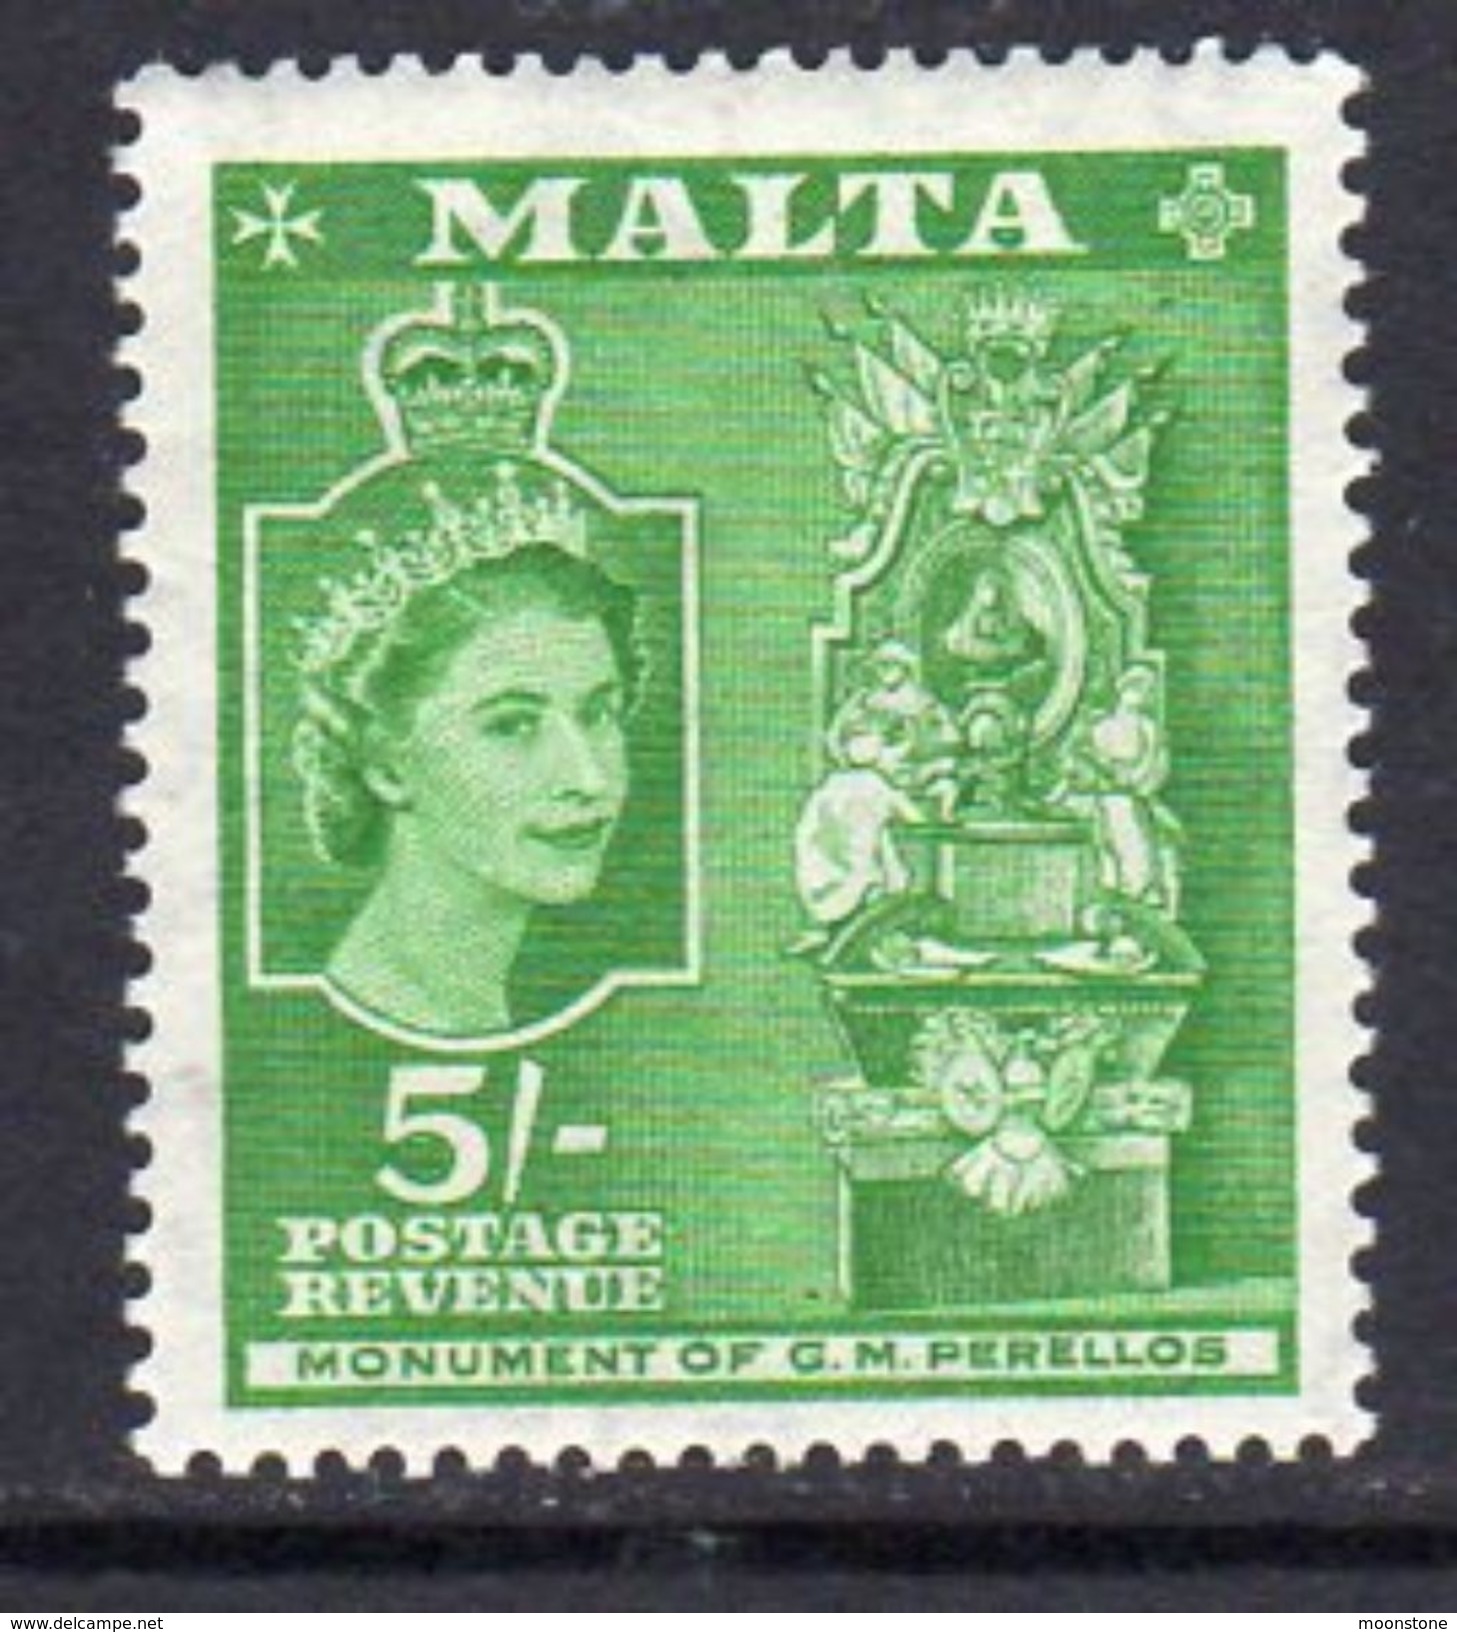 Malta 1956-8 5/- Definitive, Grand Master Perello's Monument, MNH SG 280 (A) - Malte